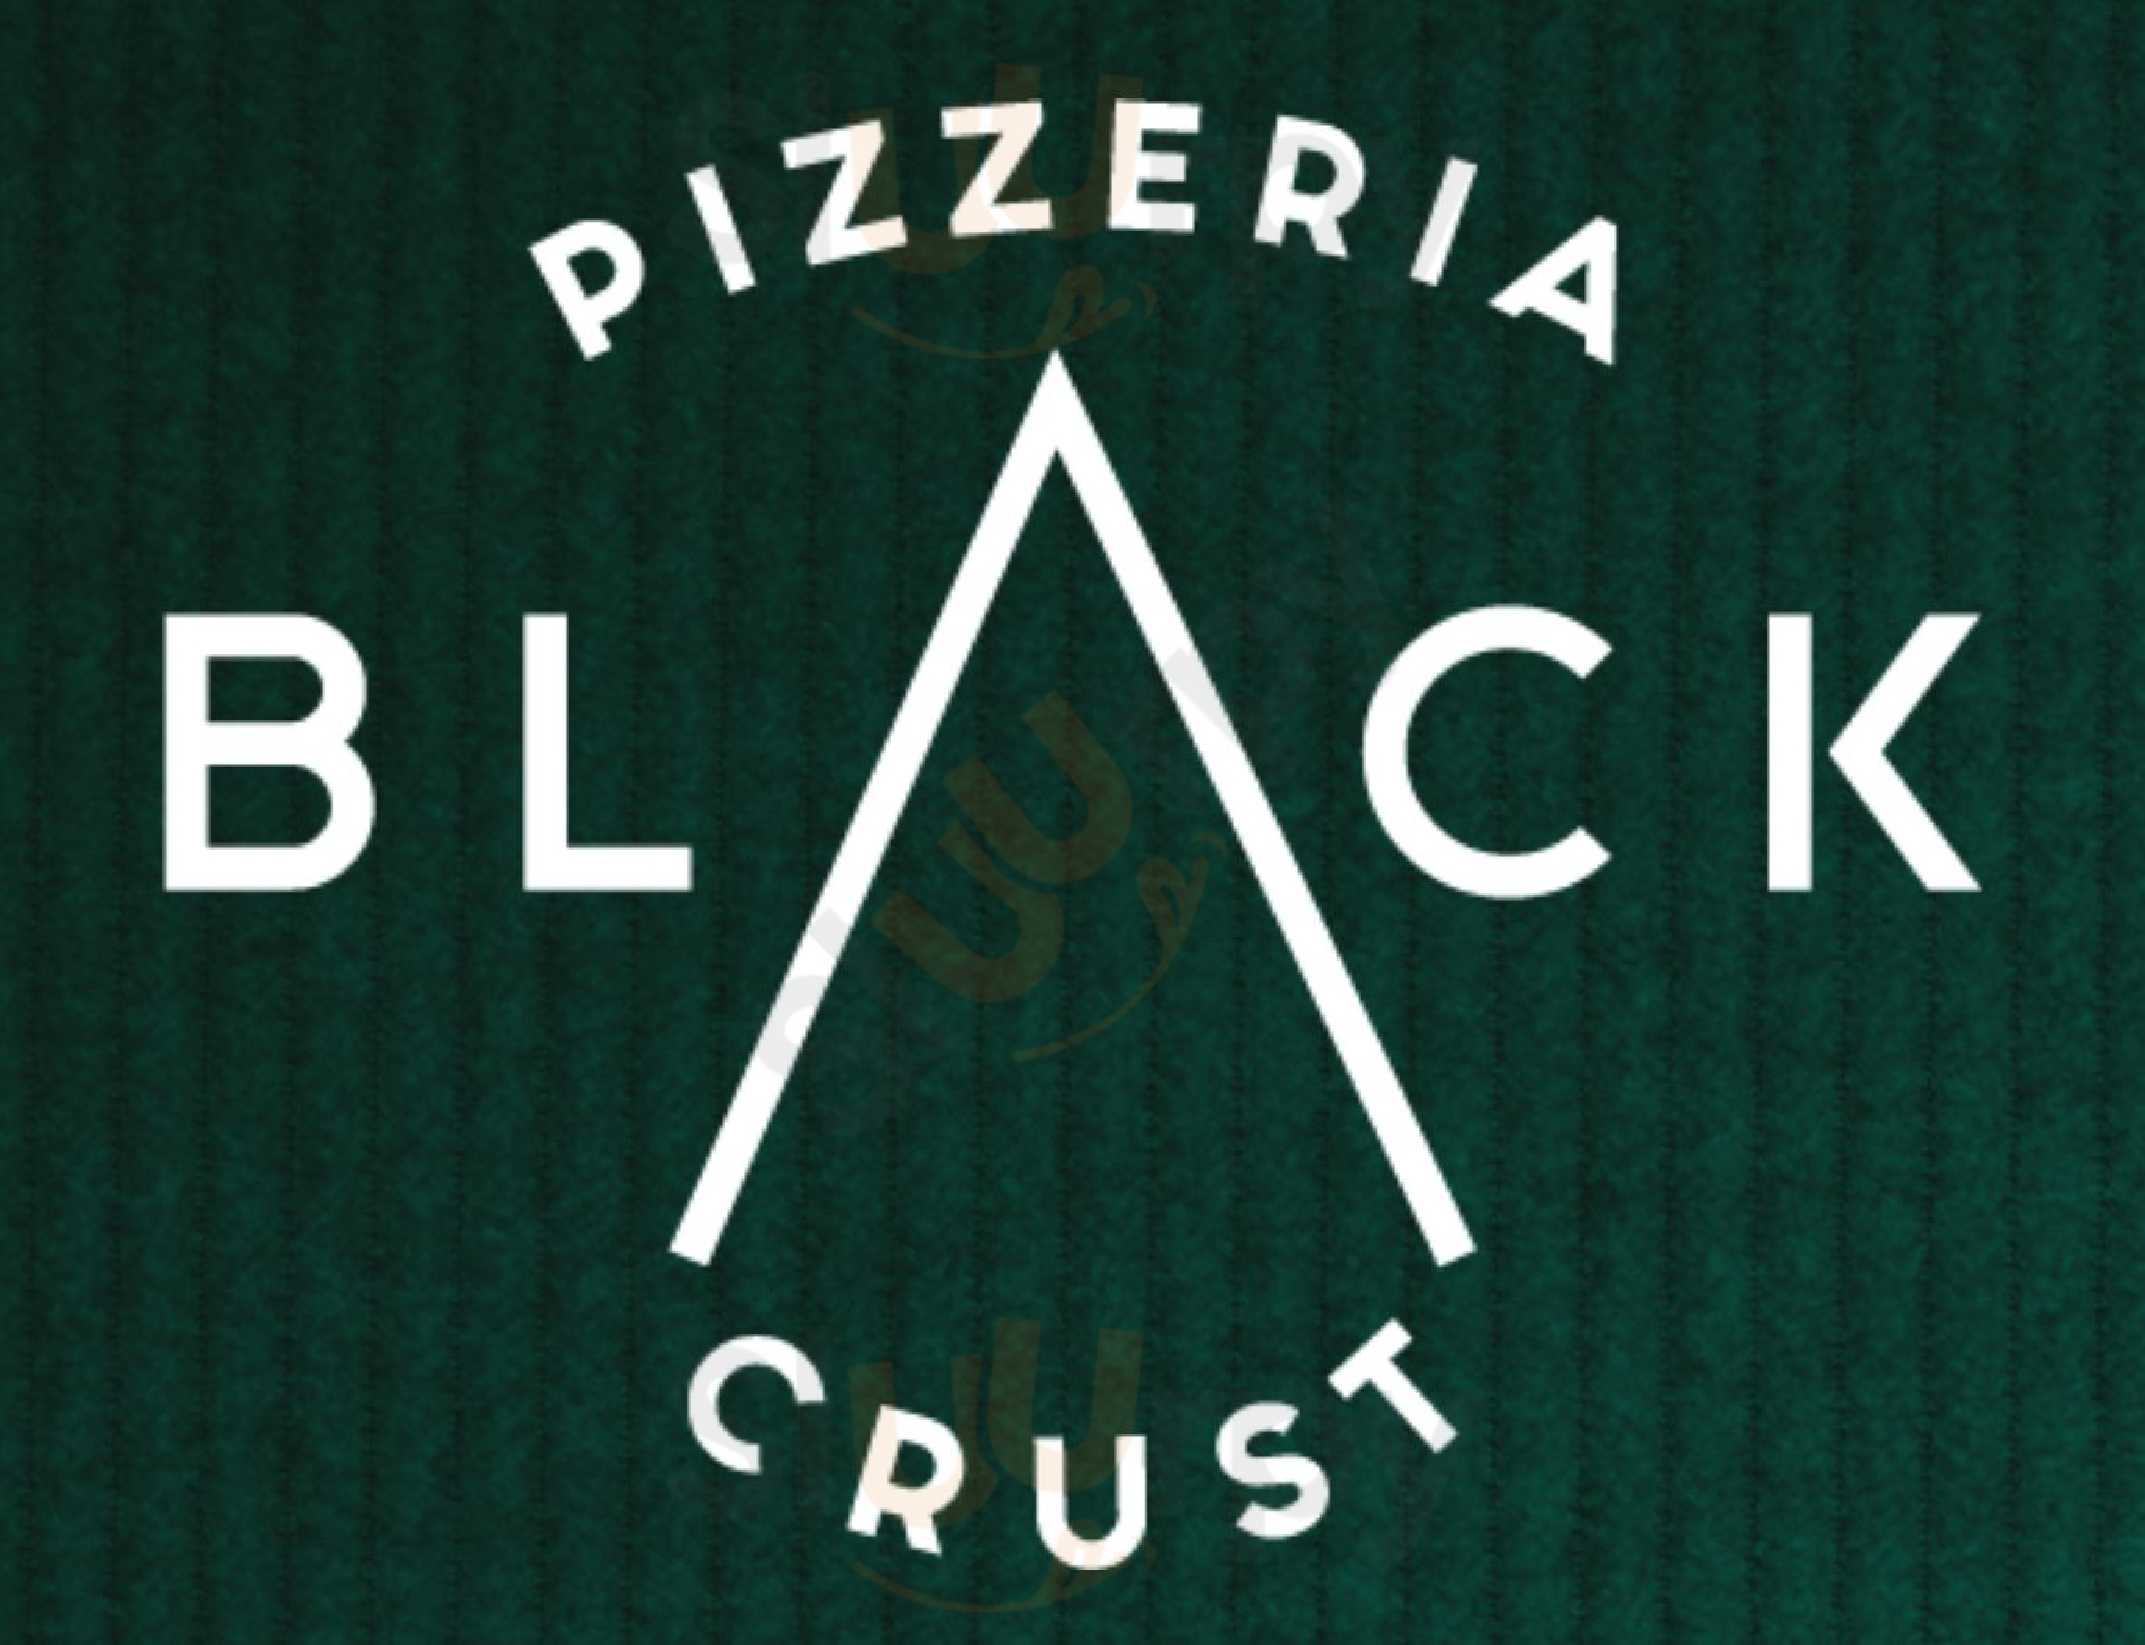 Black Crust Pizzeria Vik Menu - 1